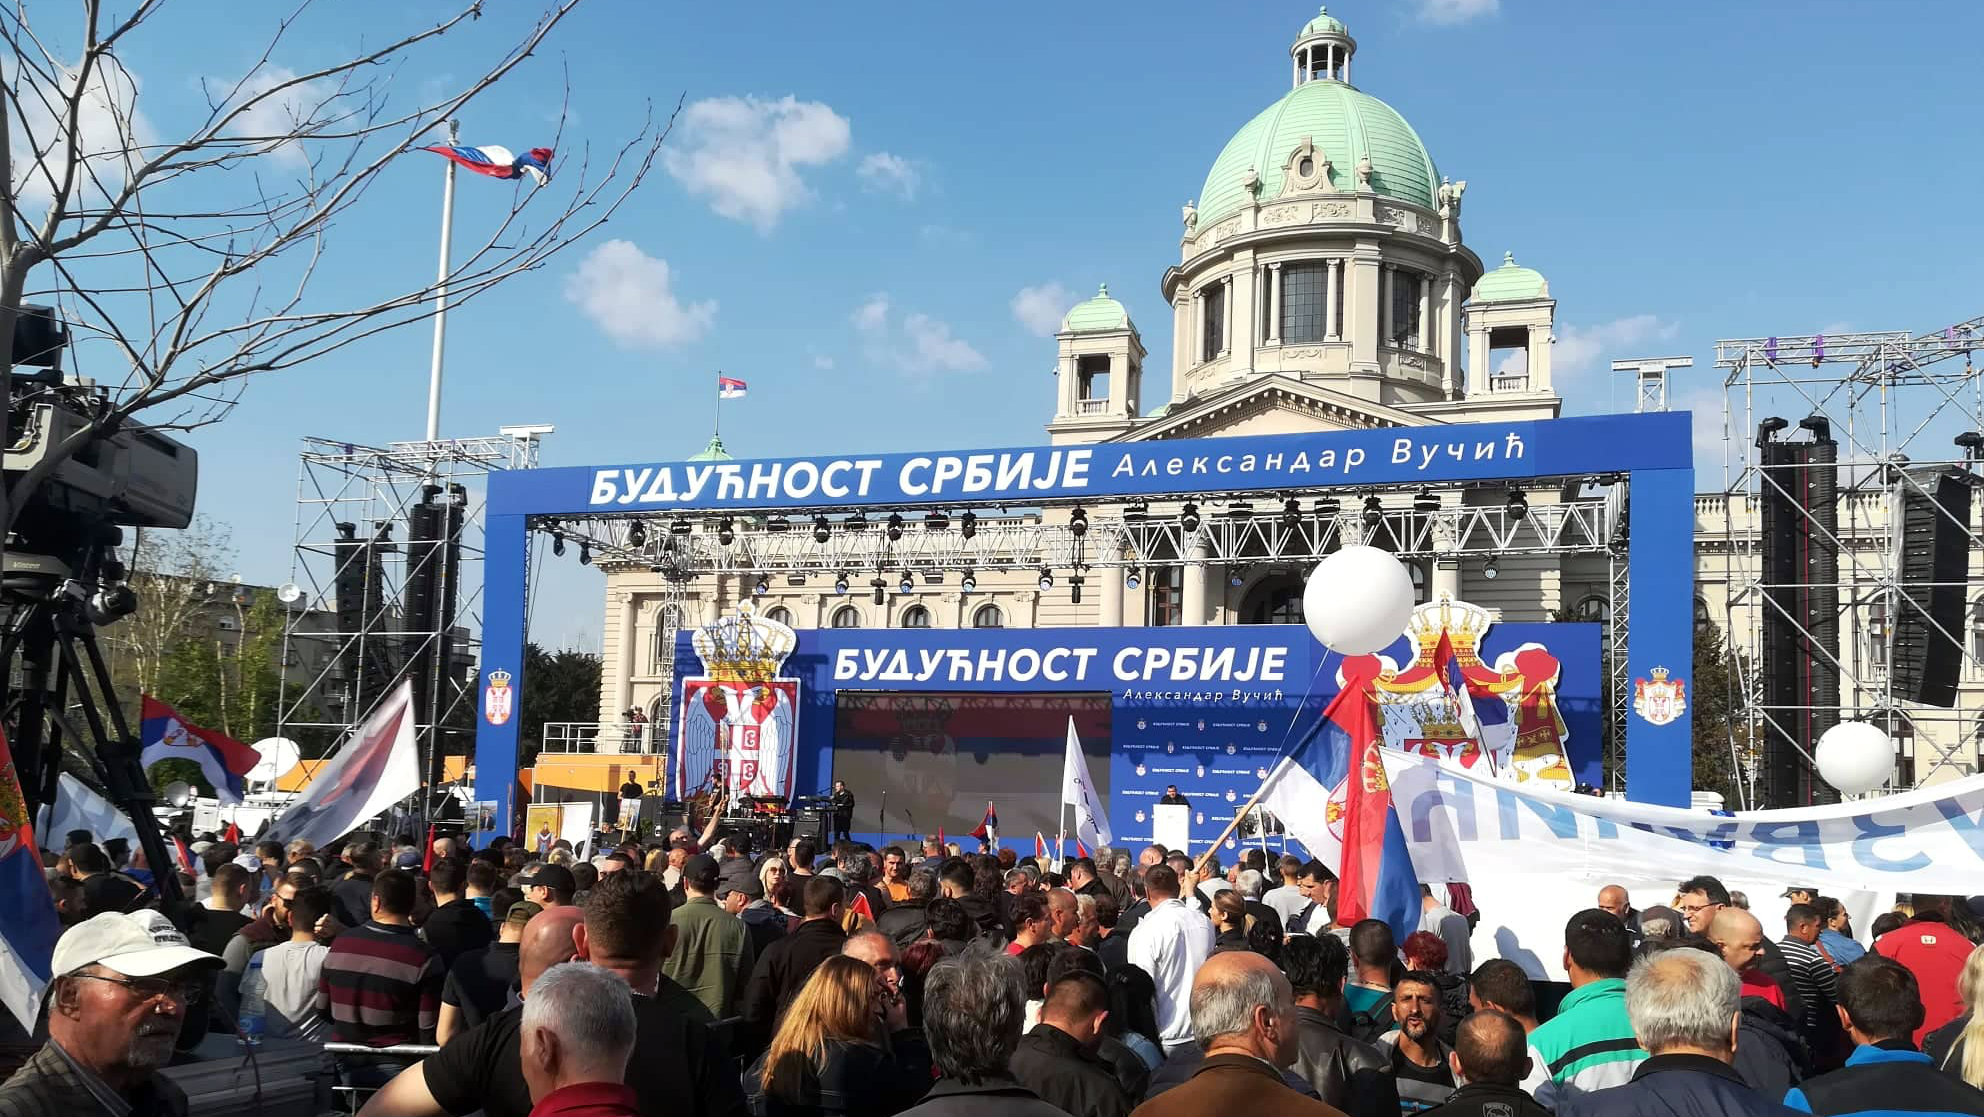 Završen miting SNS u Beogradu, bez procene MUP o broju okupljenih (FOTO, VIDEO) 2